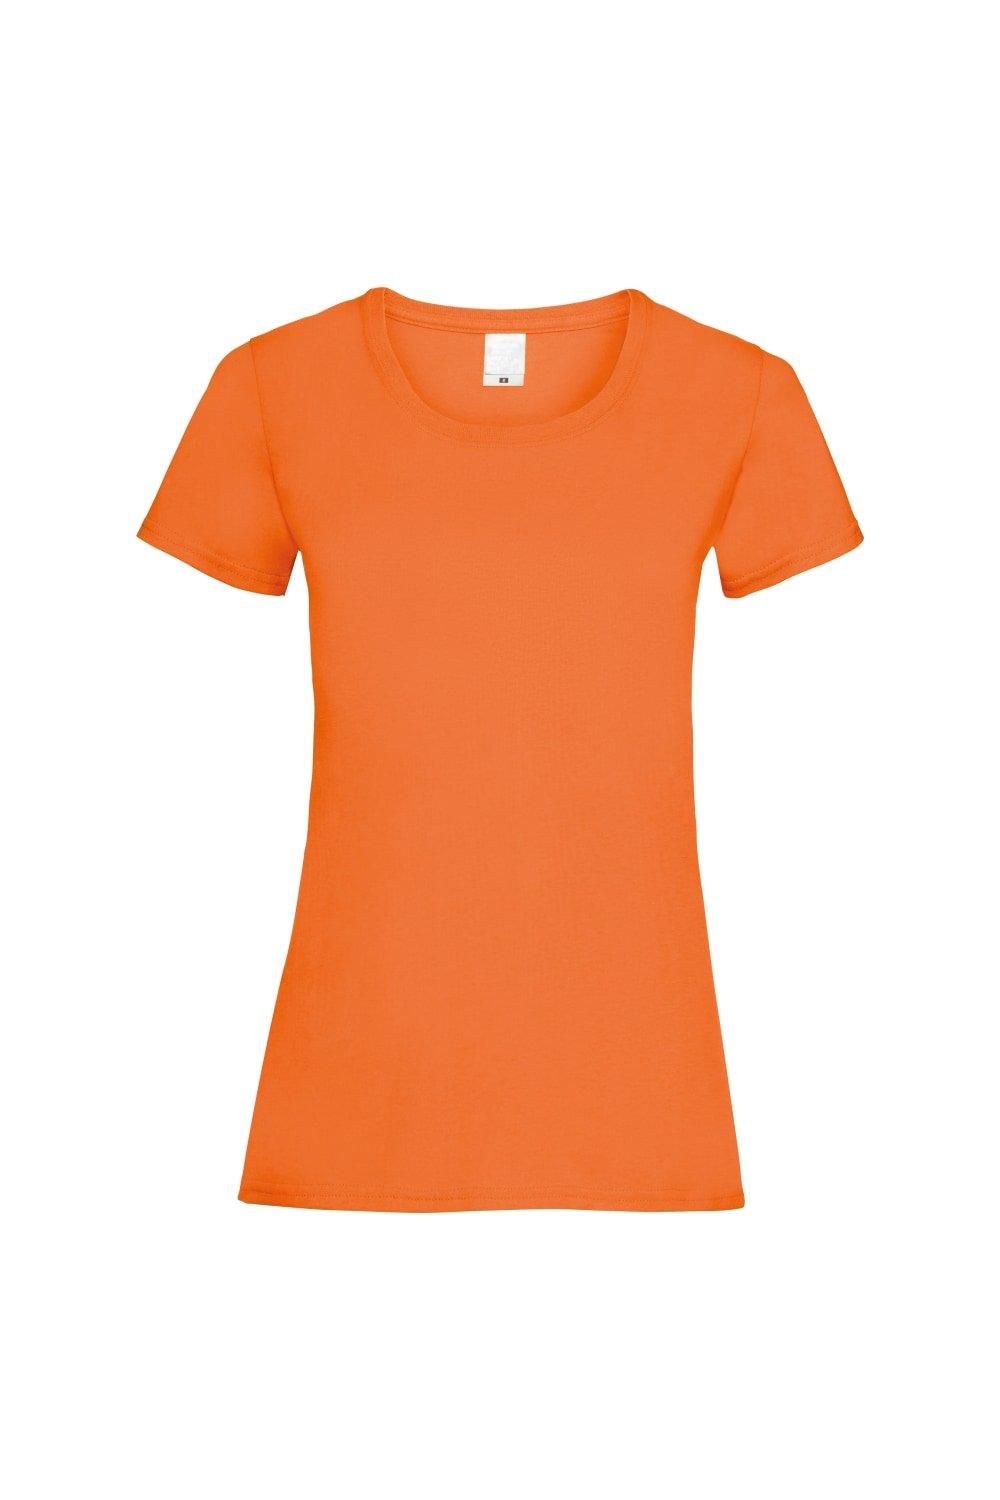 Повседневная футболка с короткими рукавами Value Universal Textiles, оранжевый повседневная футболка value с длинным рукавом universal textiles белый